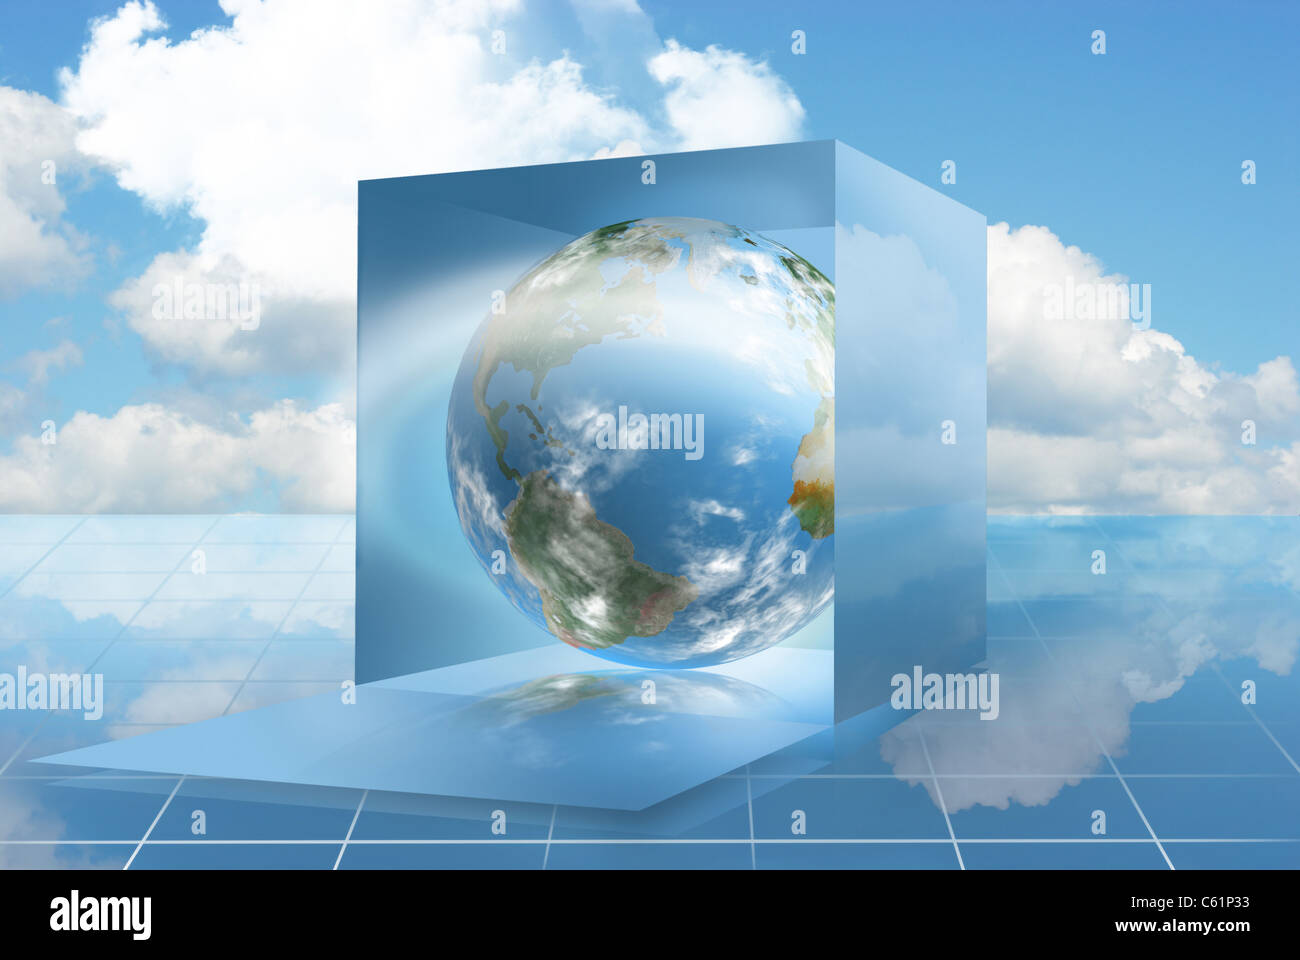 Ein Blick in eine Dropbox gemacht durch die Technik des Cloud computing Stockfoto